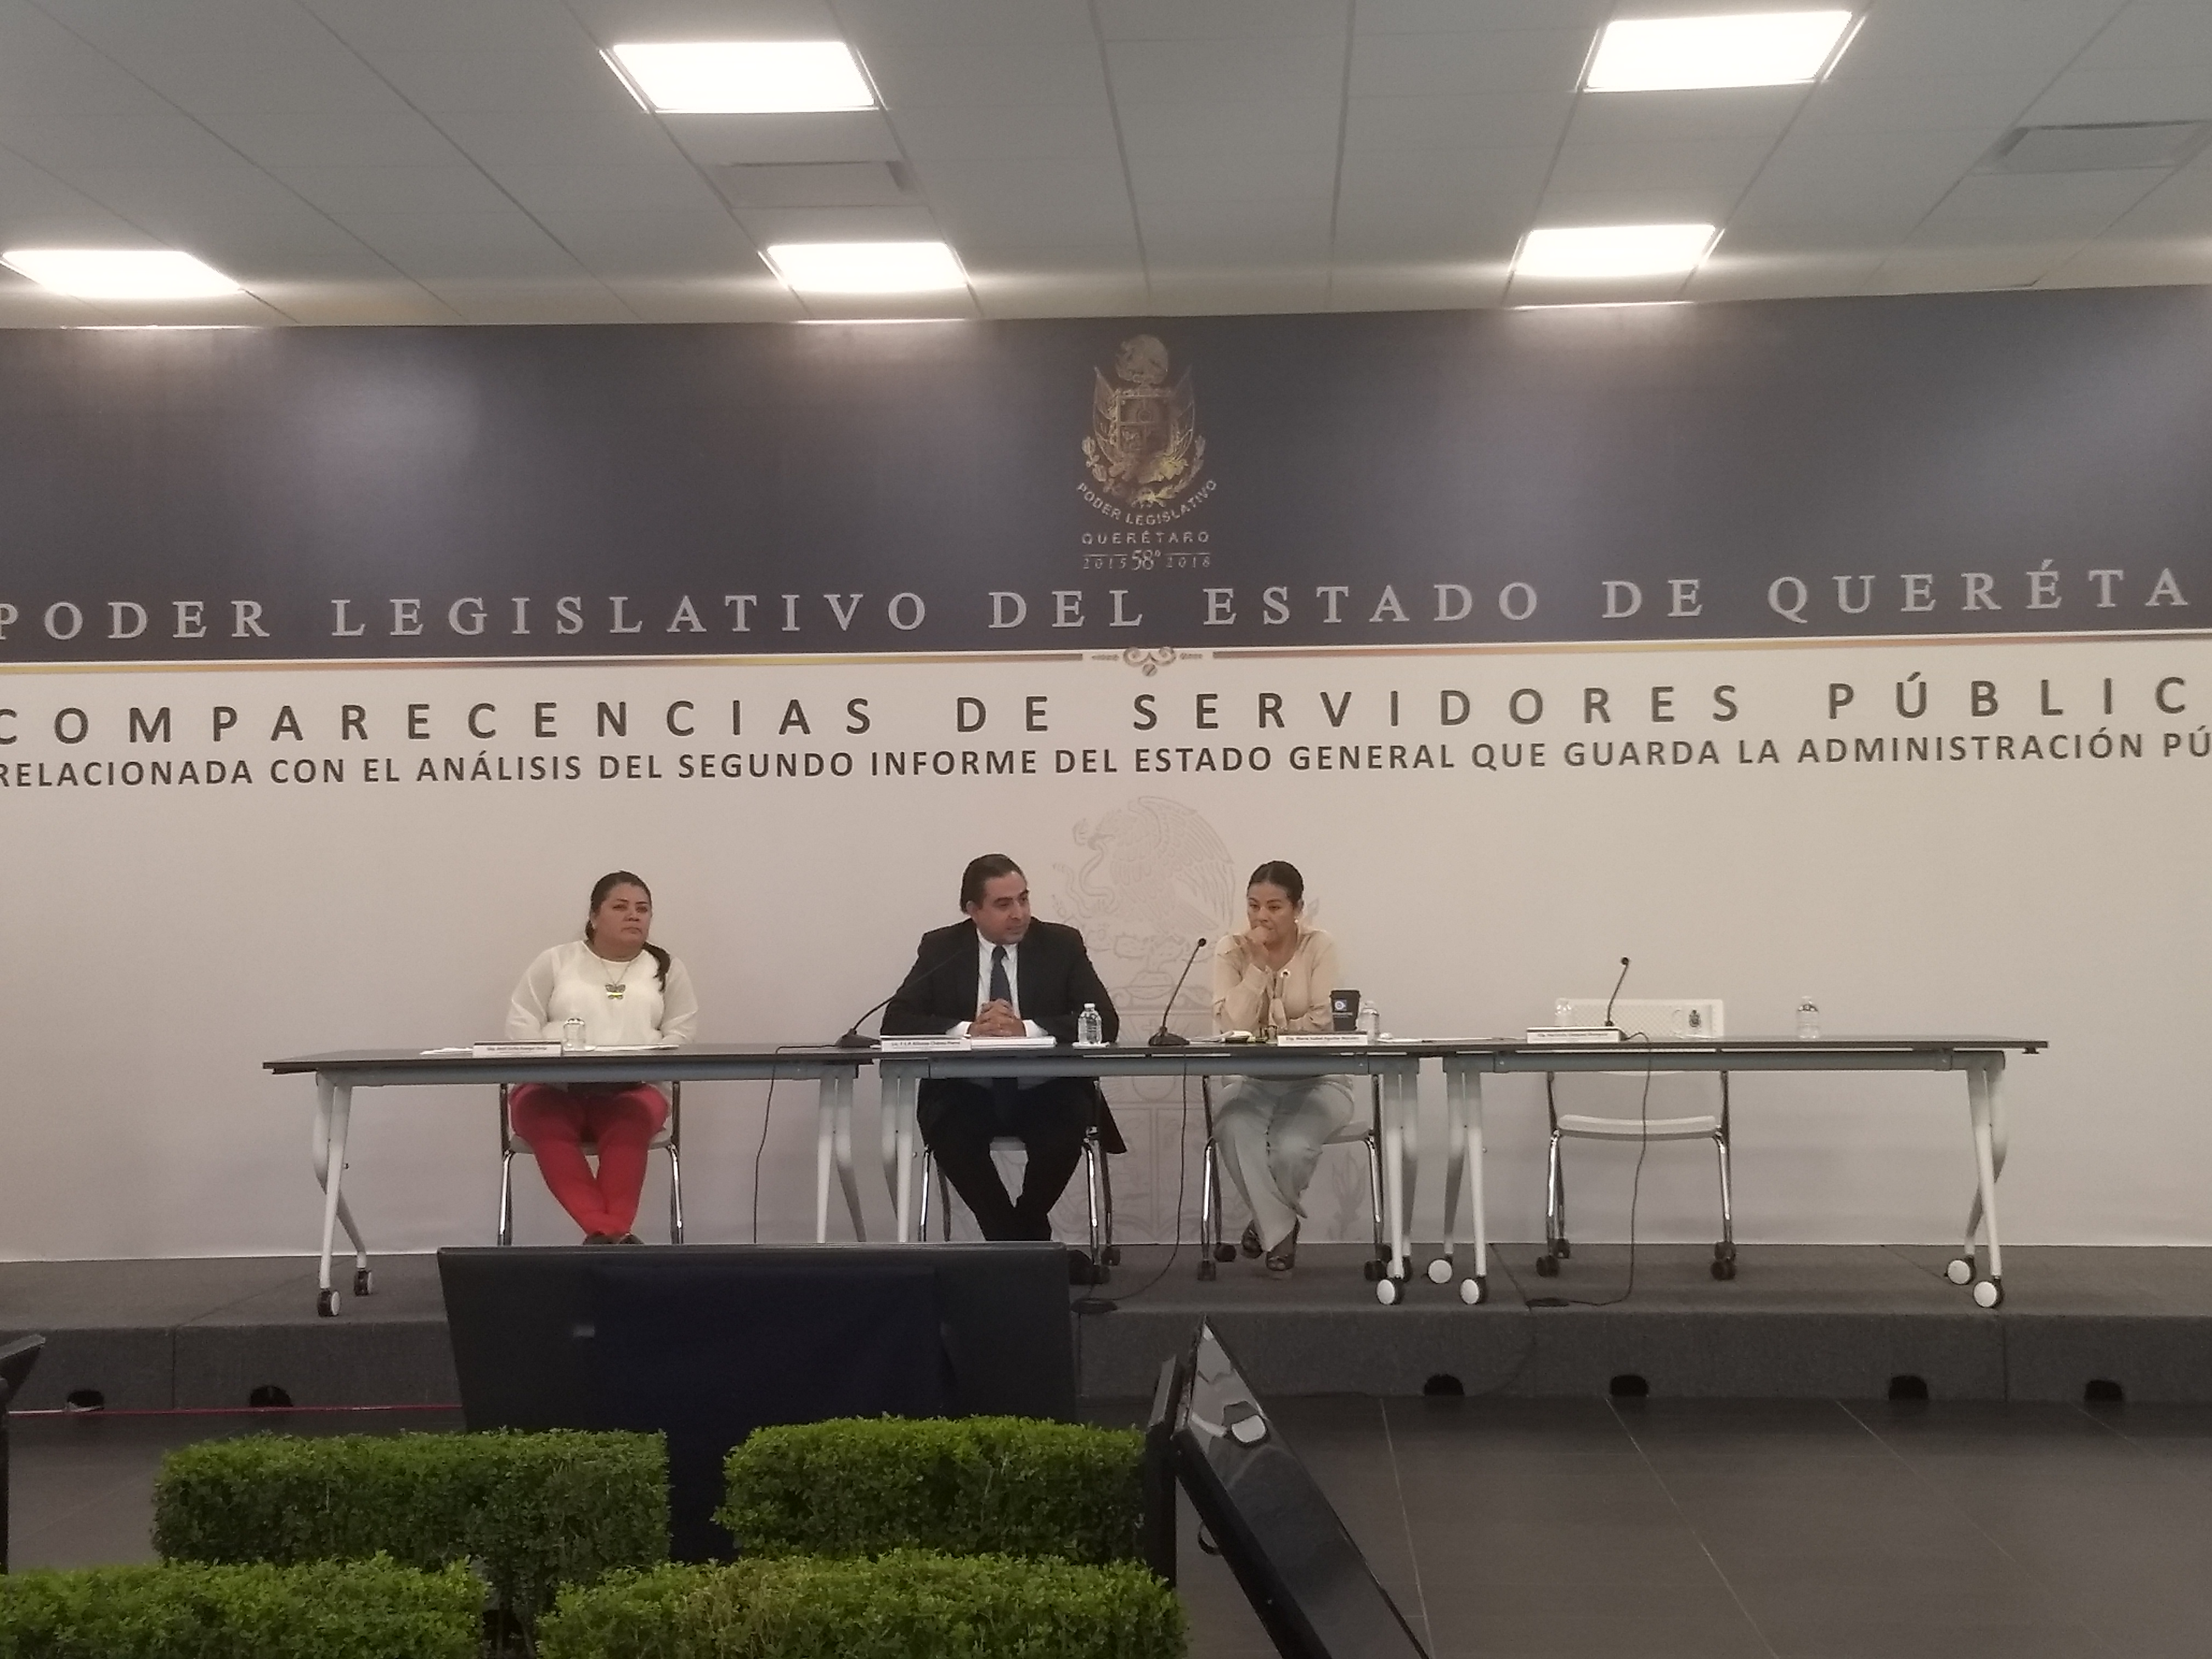  Participación de auditores externos permitió a Querétaro avanzar 21 lugares en transparencia: Alfonso Chávez